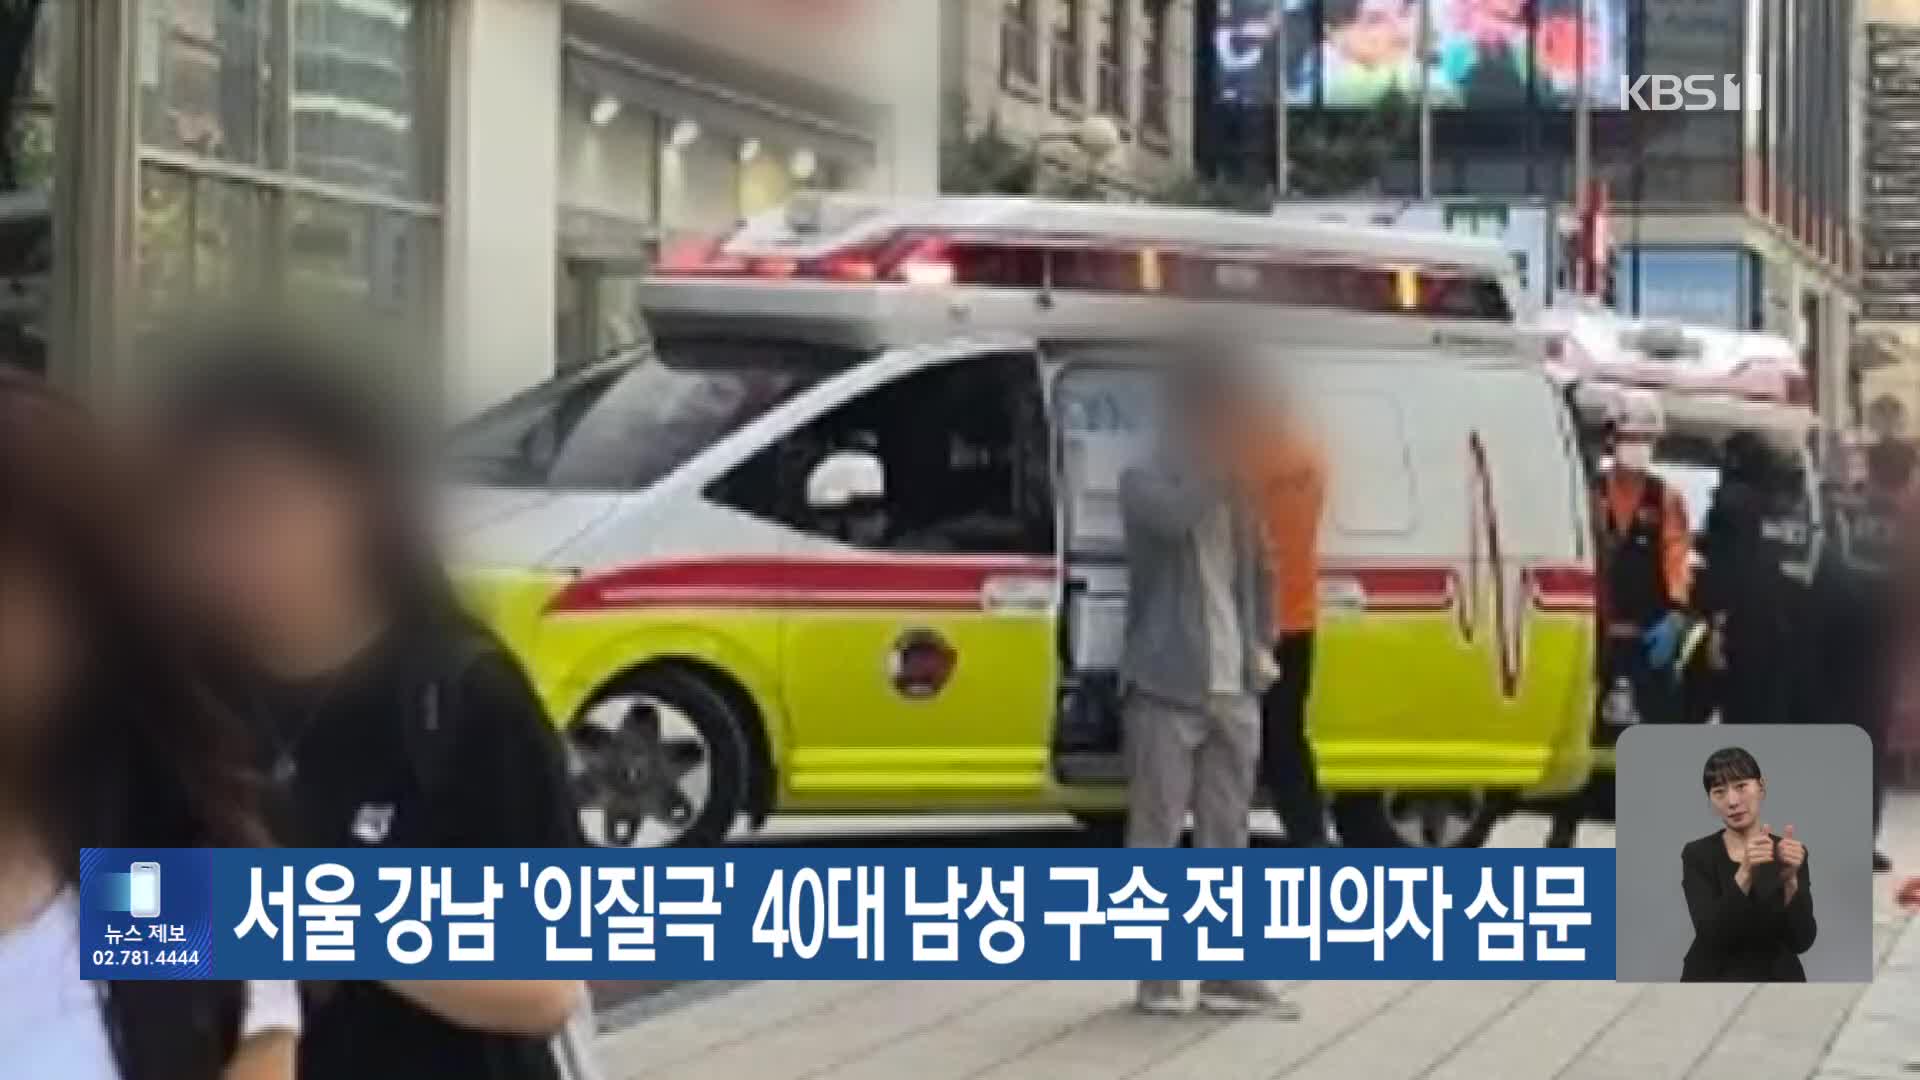 서울 강남 ‘인질극’ 40대 남성 구속 전 피의자 심문